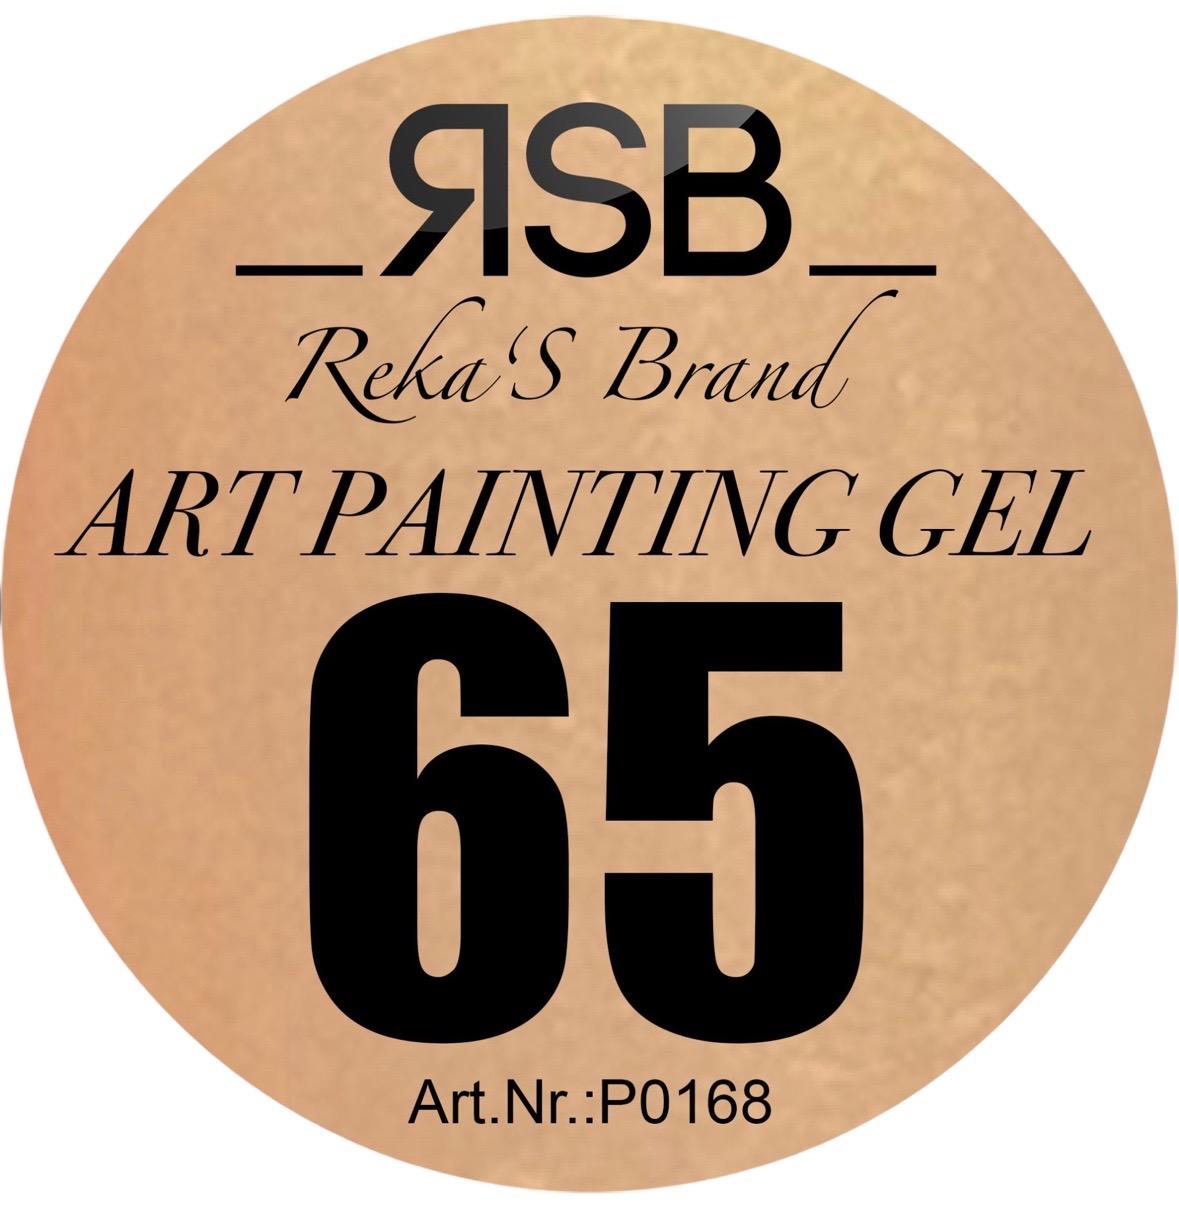 ART PAINTING GEL 65